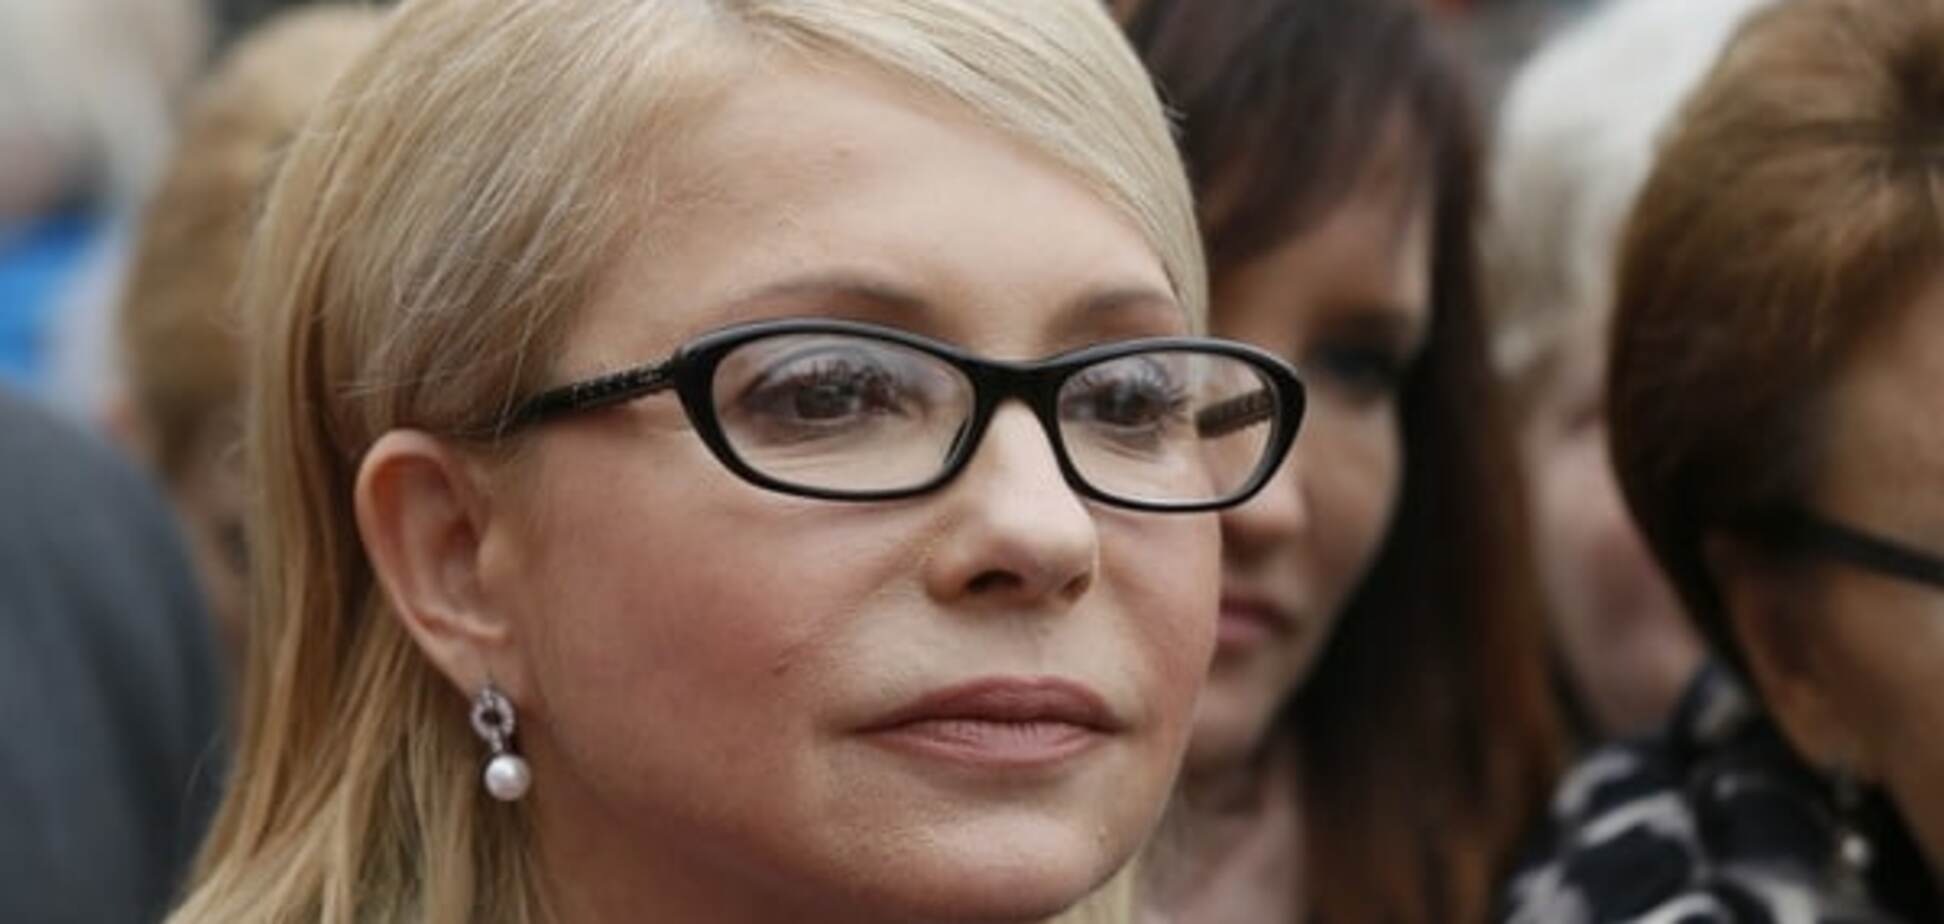 Тимошенко дала письменные гарантии президенту по поводу нового премьера - нардеп